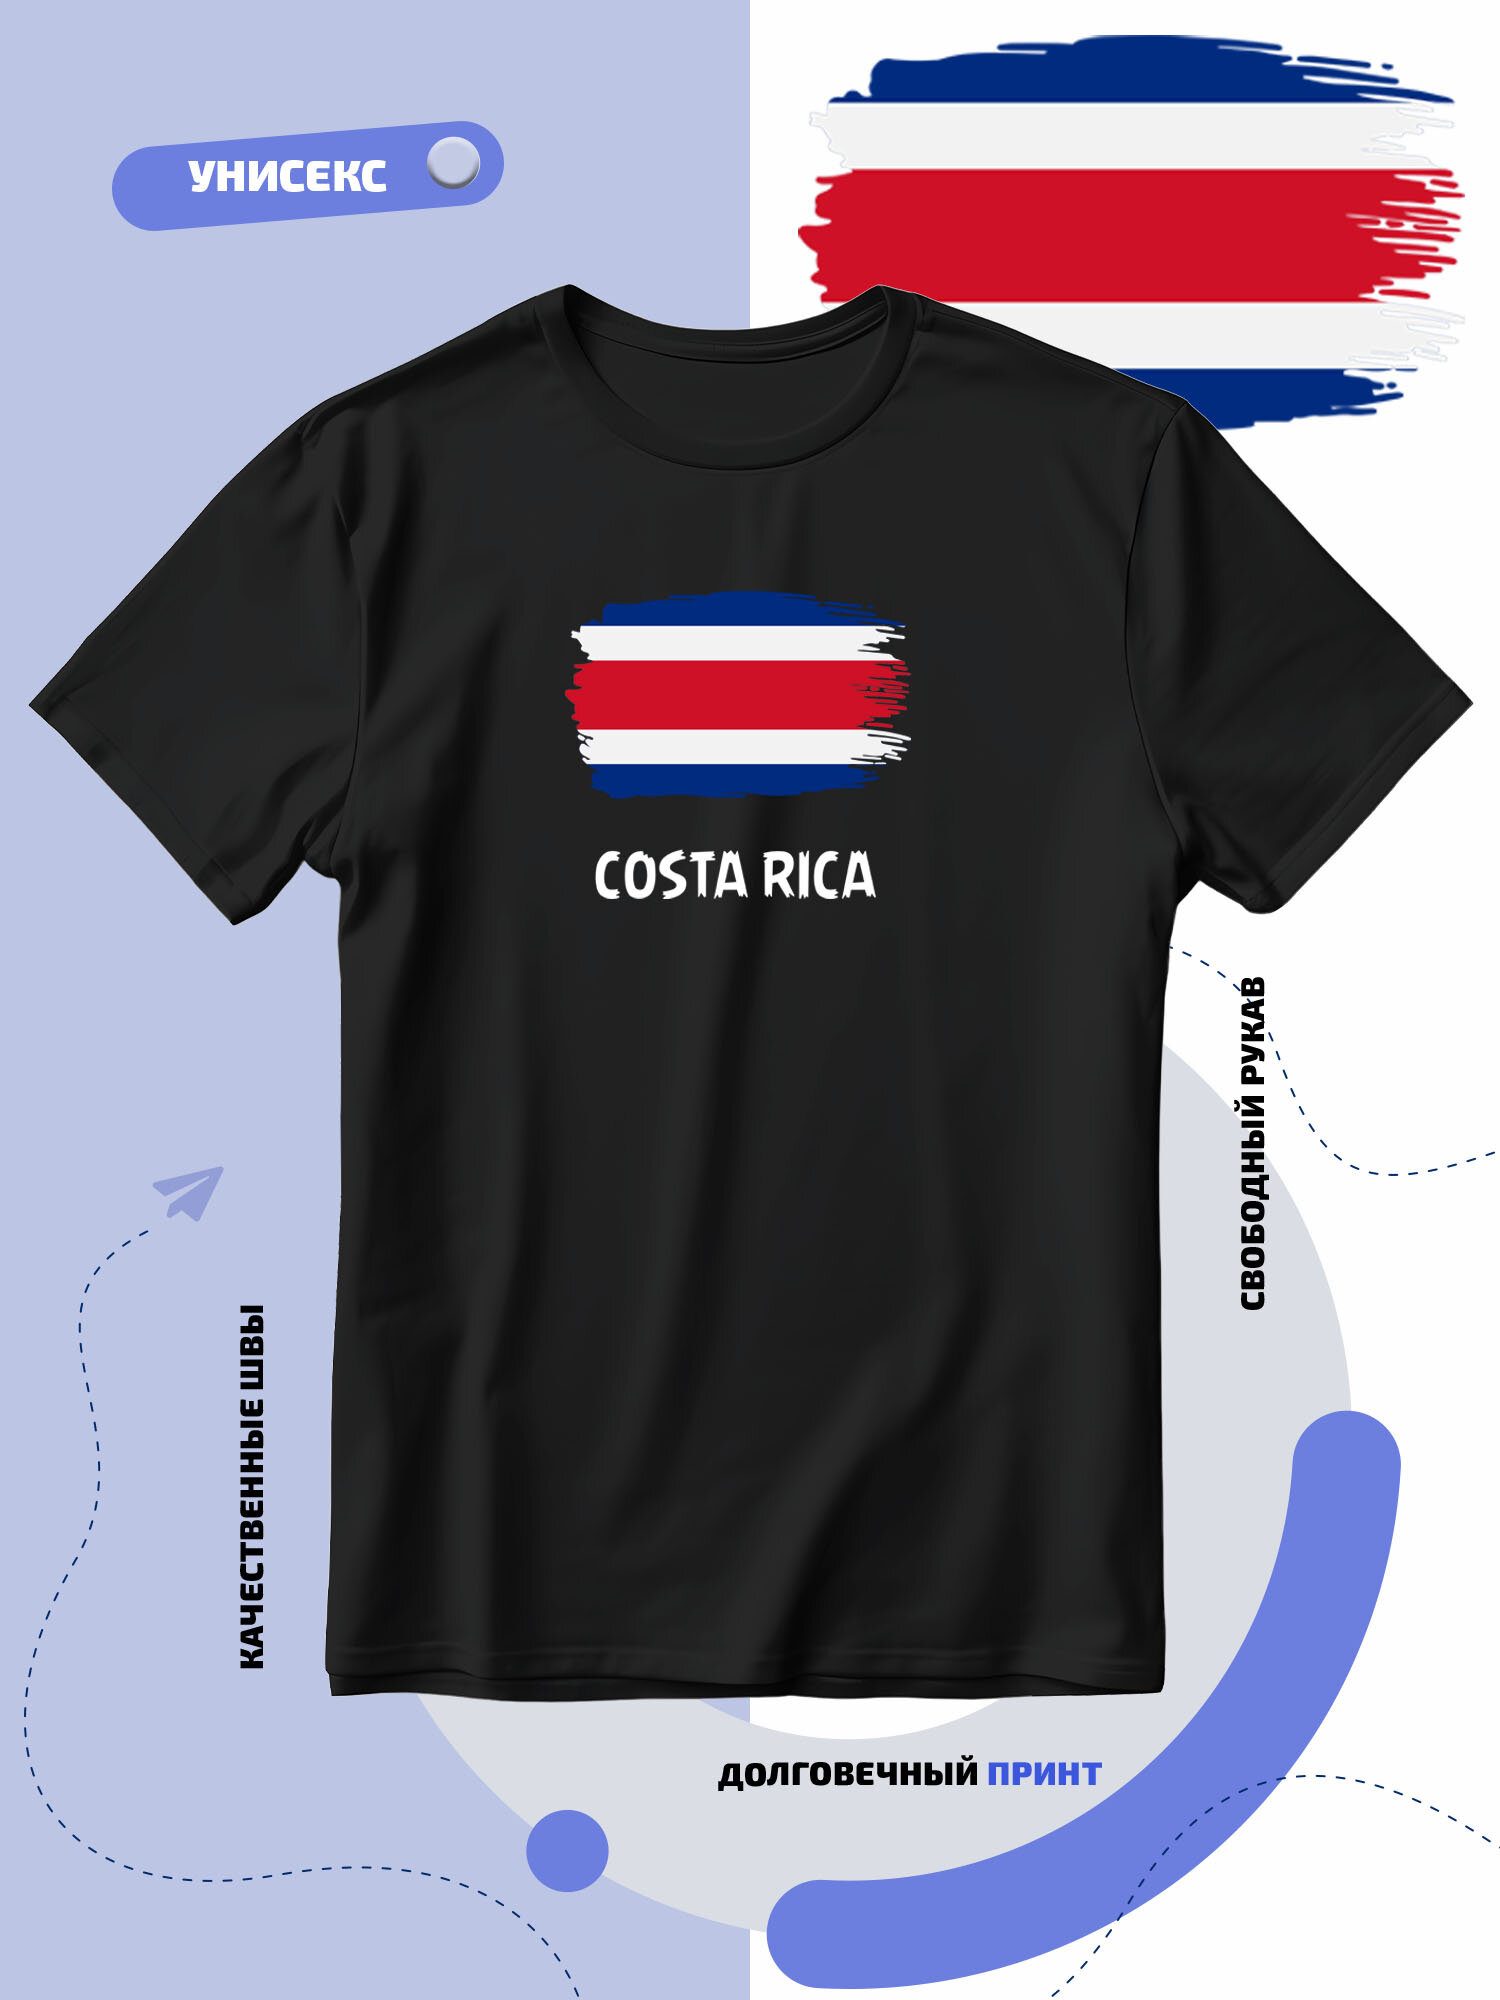 Футболка SMAIL-P с флагом Коста Рики-Costa Rica